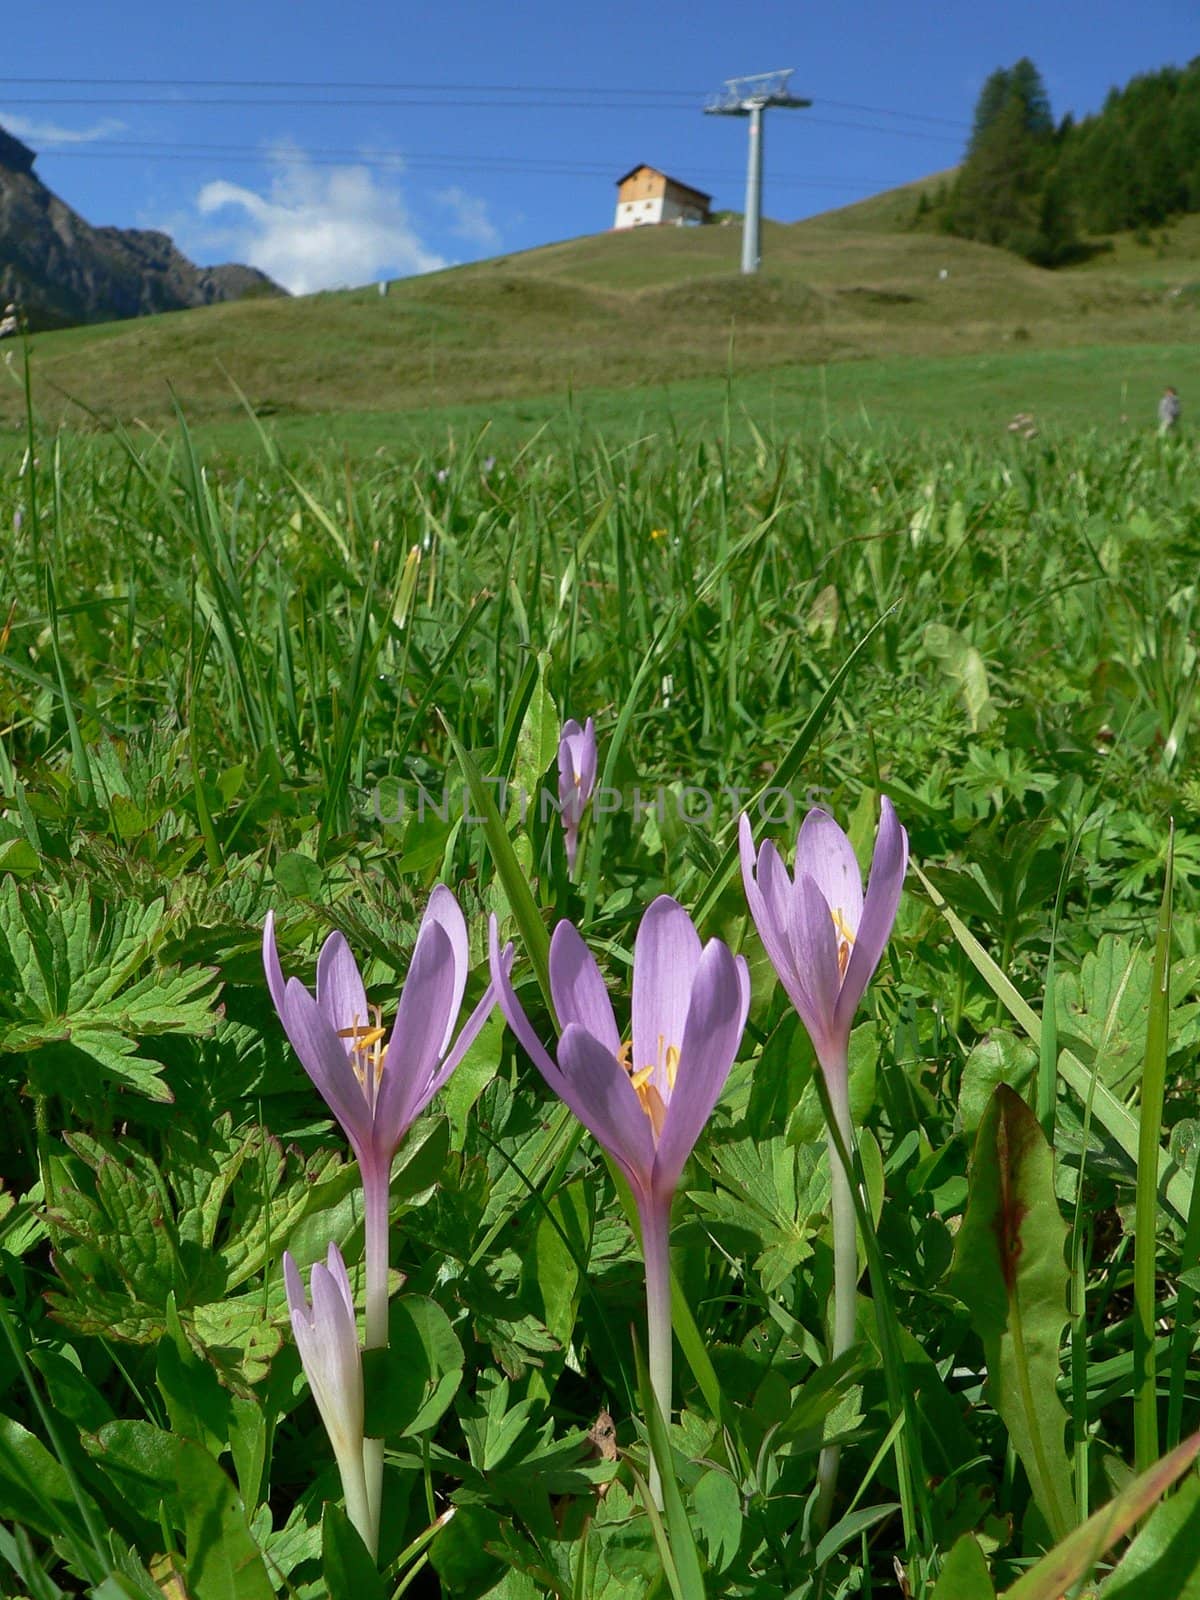 pourple flowers in a mountain landscape